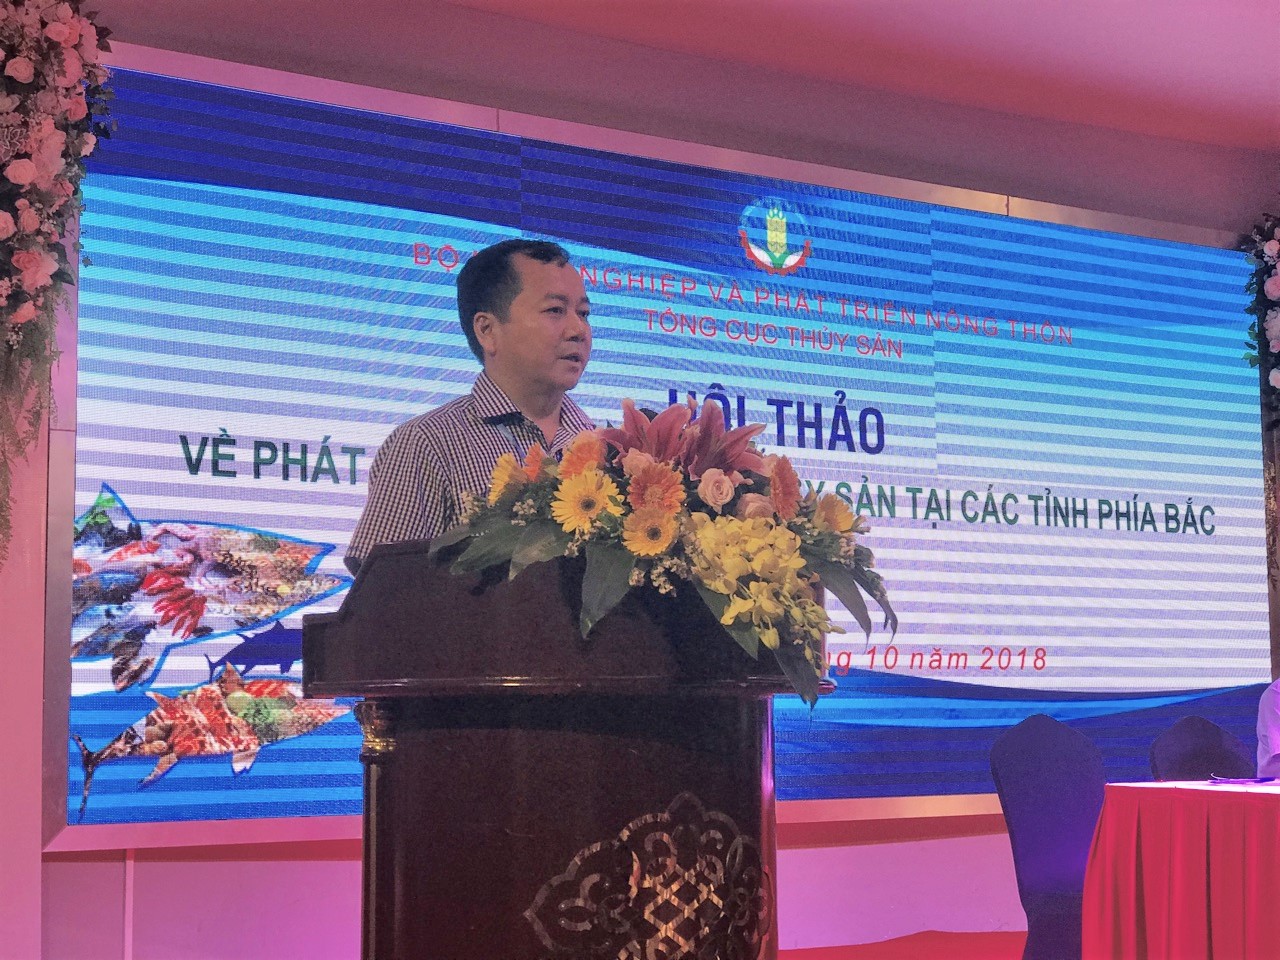 Ông Trần Đình Luân, Phó Tổng cục trưởng Tổng cục Thủy sản phát biểu tại Hội thảo